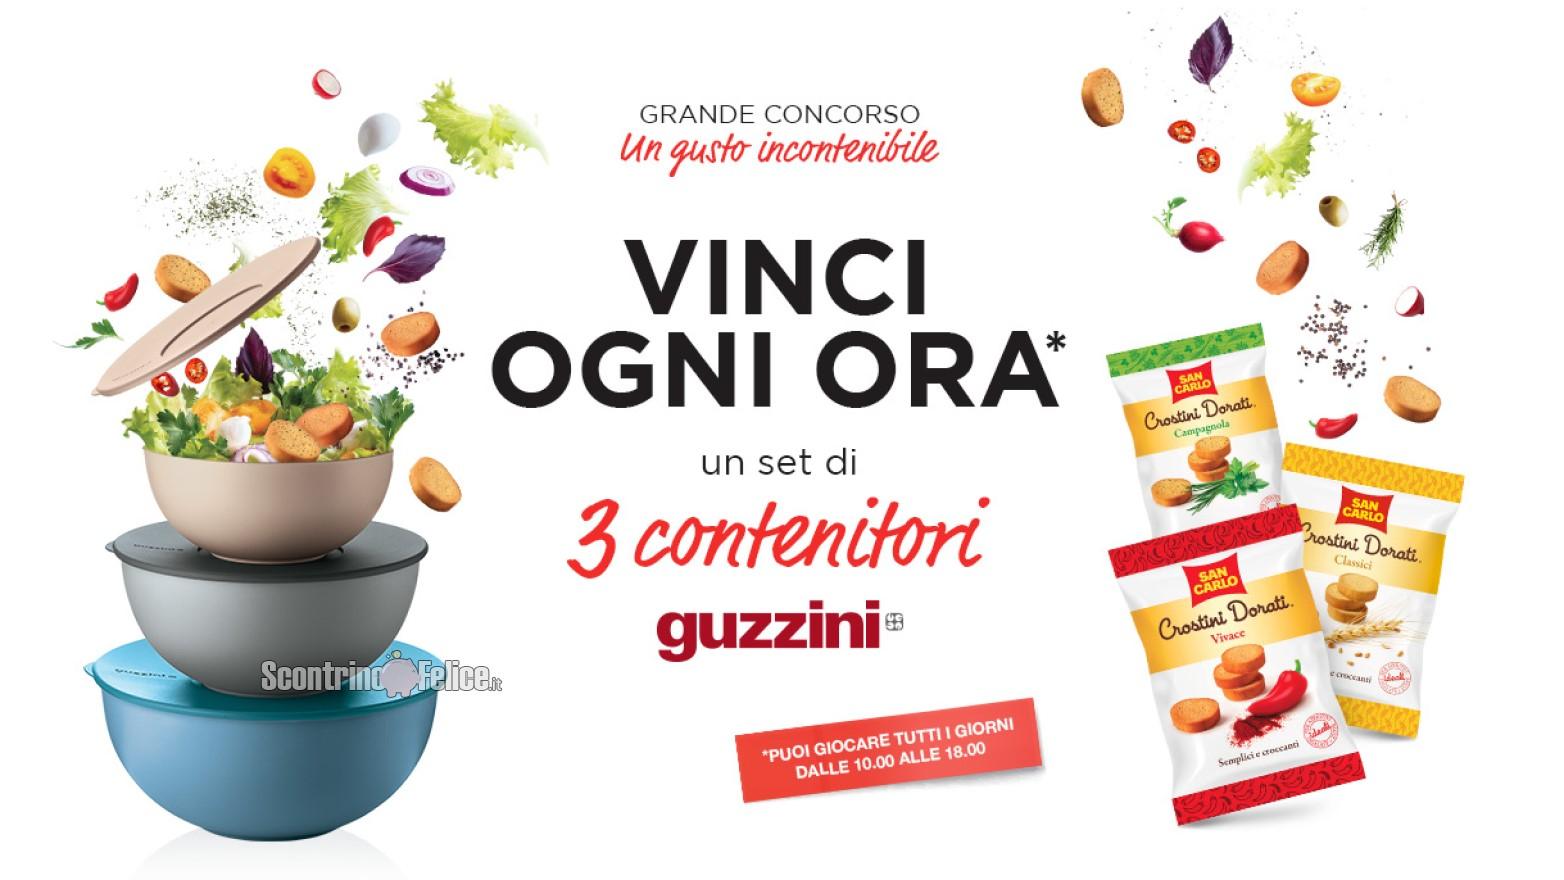 Concorso crostini San Carlo "Un gusto incontenibile": in palio 1 set di contenitori Everywhere di Guzzini ogni ora!